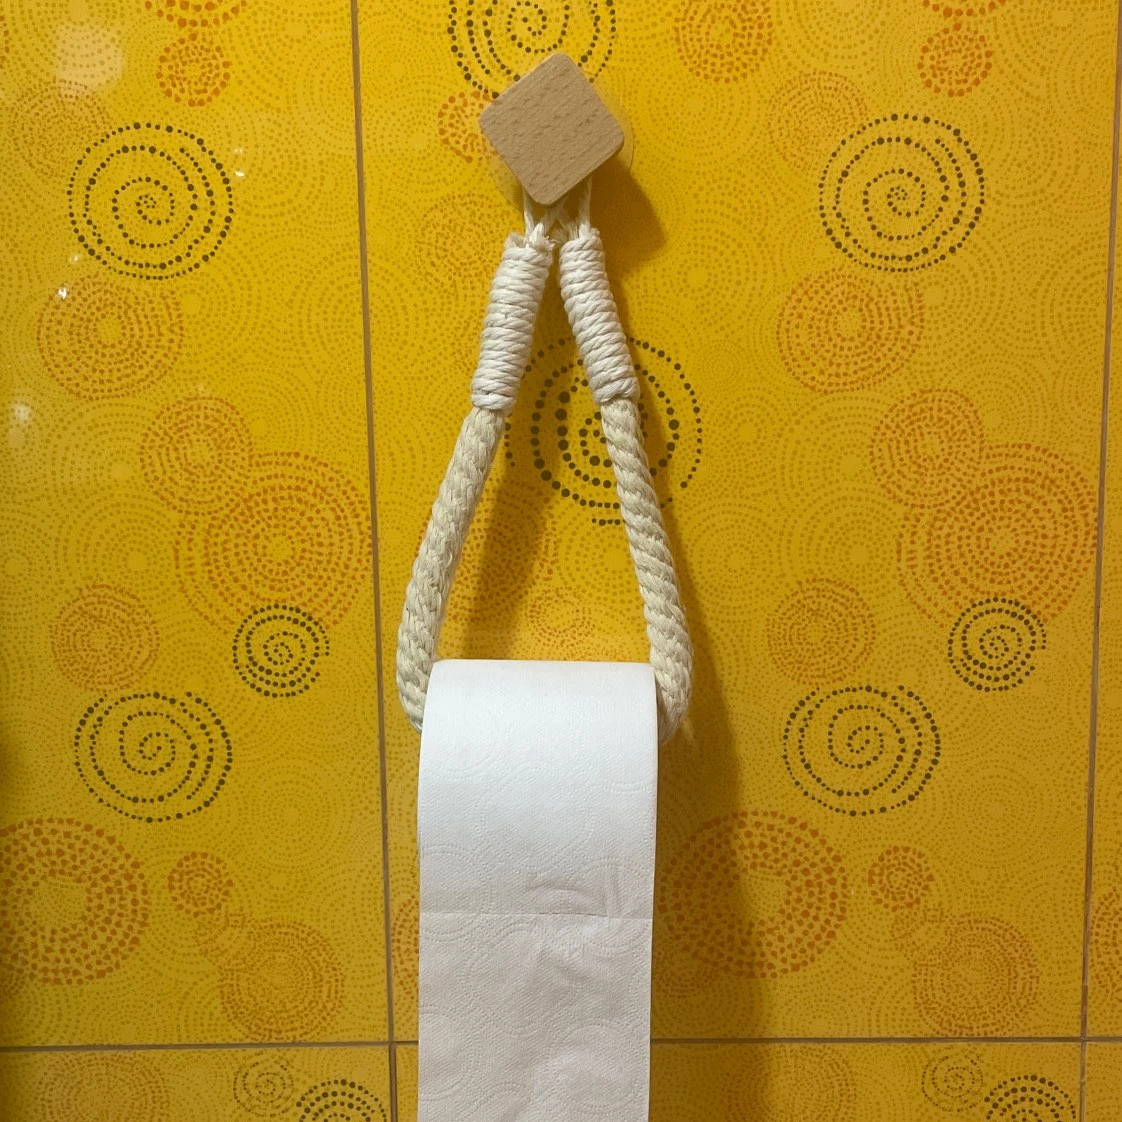 Nail-free Paper Towel Holders Bathroom Towel Hook Hemp Toilet Paper Holder Towel Rack Beige Hemp Color Bathroom accessories